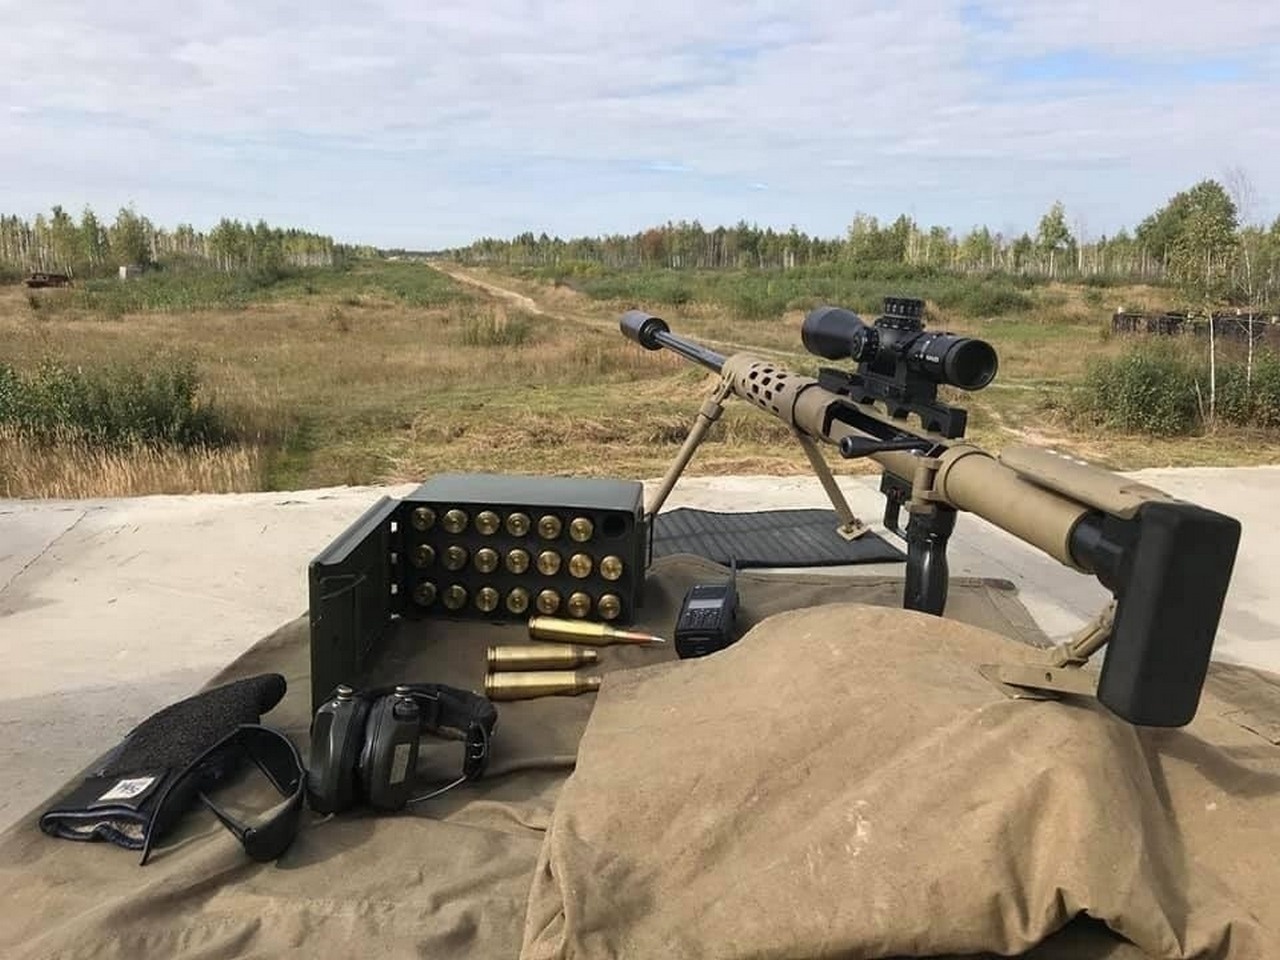 Снайперская винтовка, быстро меняющая калибры под спецзадачу «Властелин горизонта» (Horizon’s Lord), конструктор Иван Лукашевич.